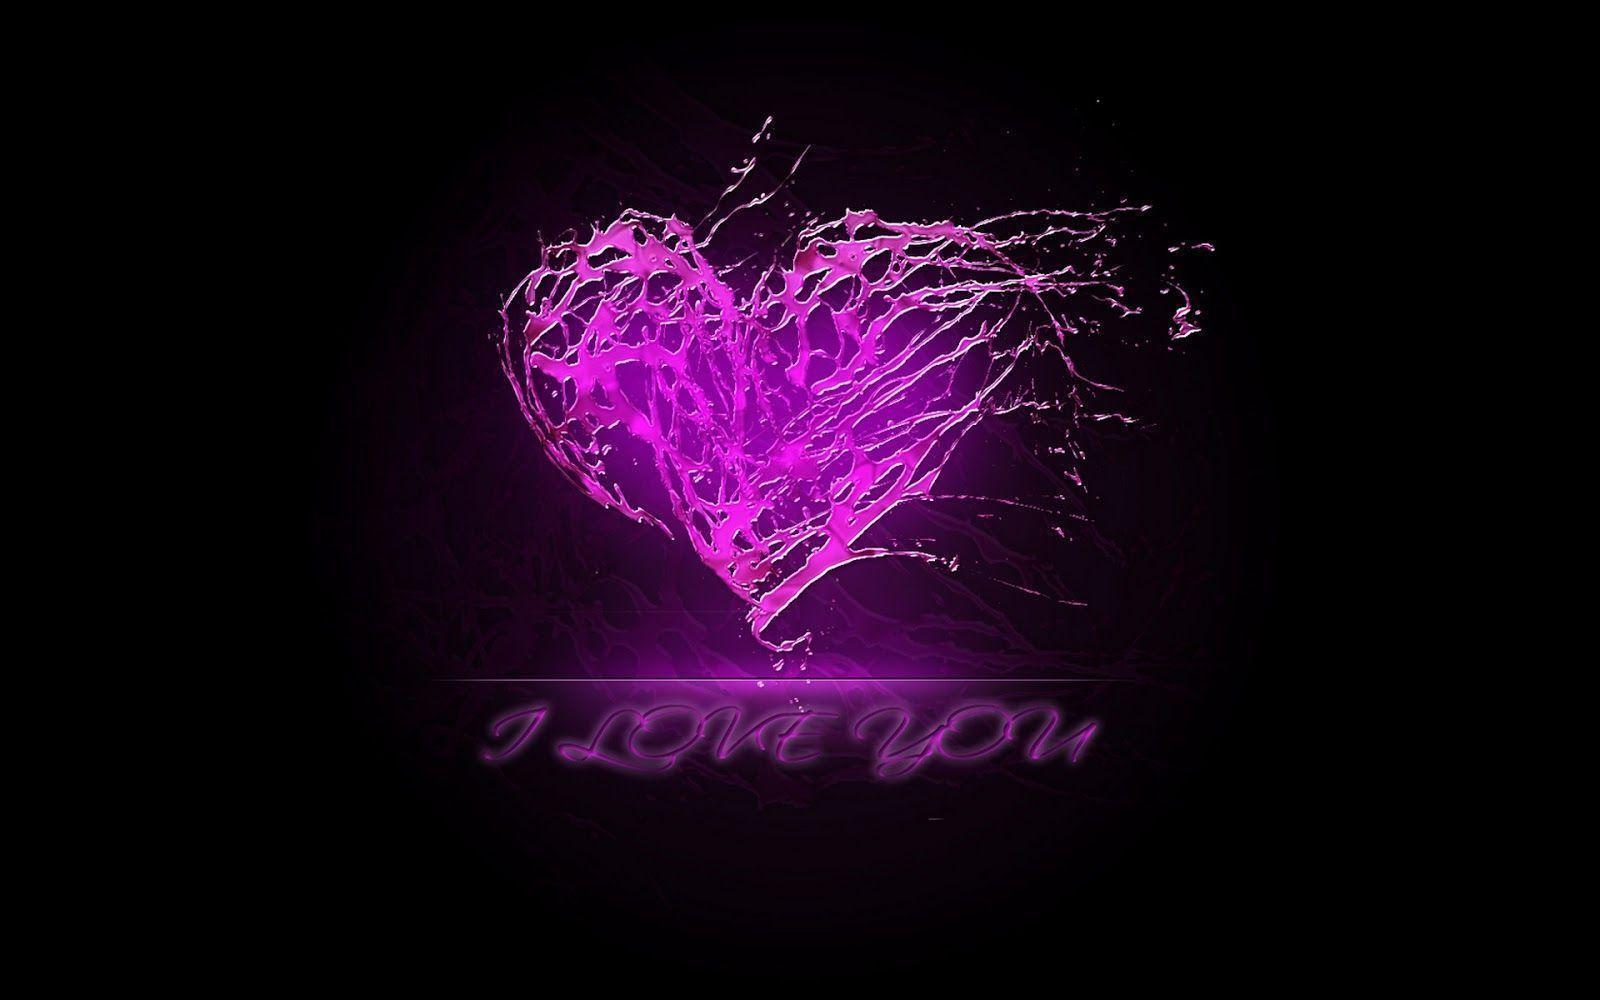 Beautiful purple heart wallpaper, purple heart wallpaper